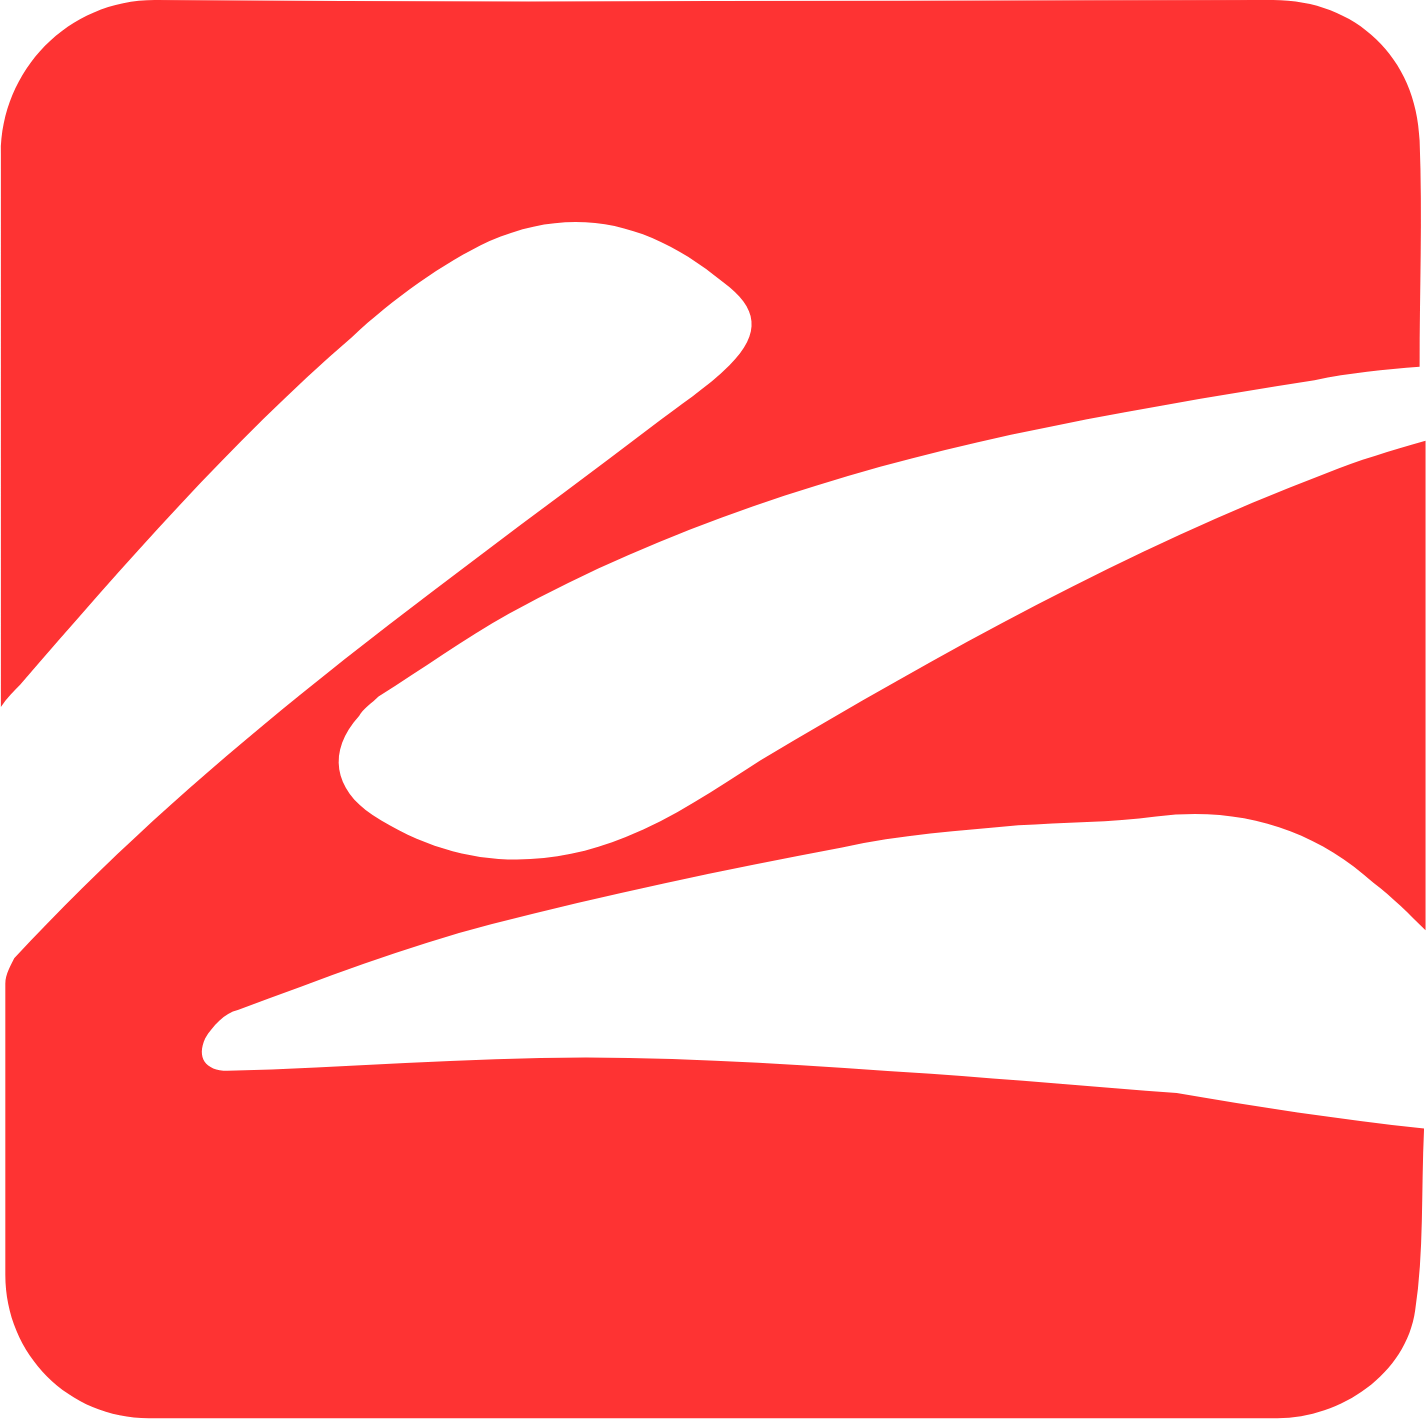 Kingsoft logo (transparent PNG)